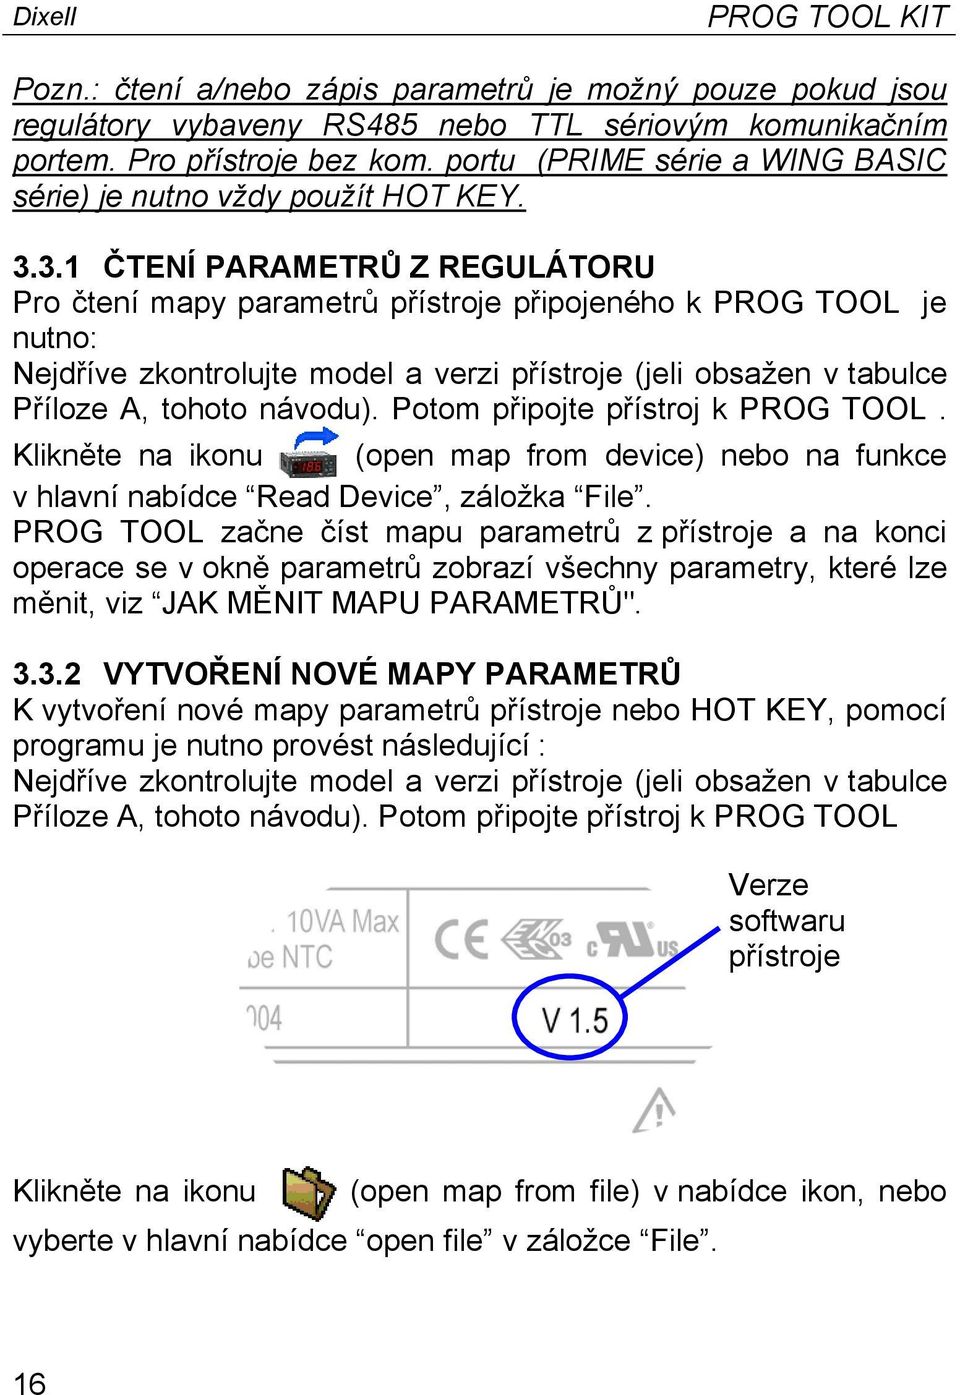 3.1 ČTENÍ PARAMETRŮ Z REGULÁTORU Pro čtení mapy parametrů přístroje připojeného k PROG TOOL je nutno: Nejdříve zkontrolujte model a verzi přístroje (jeli obsažen v tabulce Příloze A, tohoto návodu).